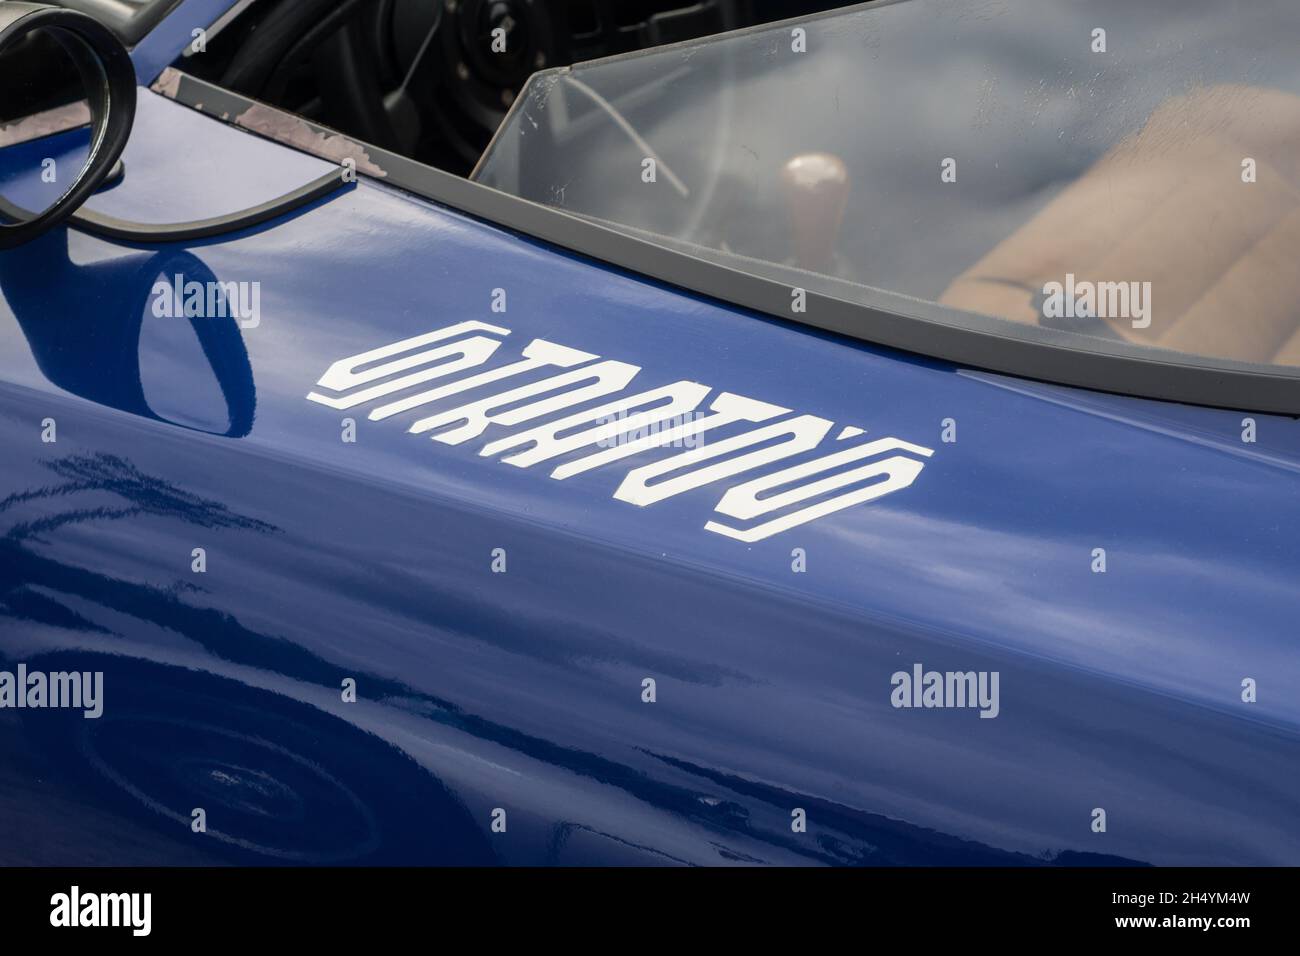 Nahaufnahme des Logonamens an der Tür eines blauen Lancia Stratos HF Stradale klassischen italienischen Sport-Rallye-Autos. Stockfoto